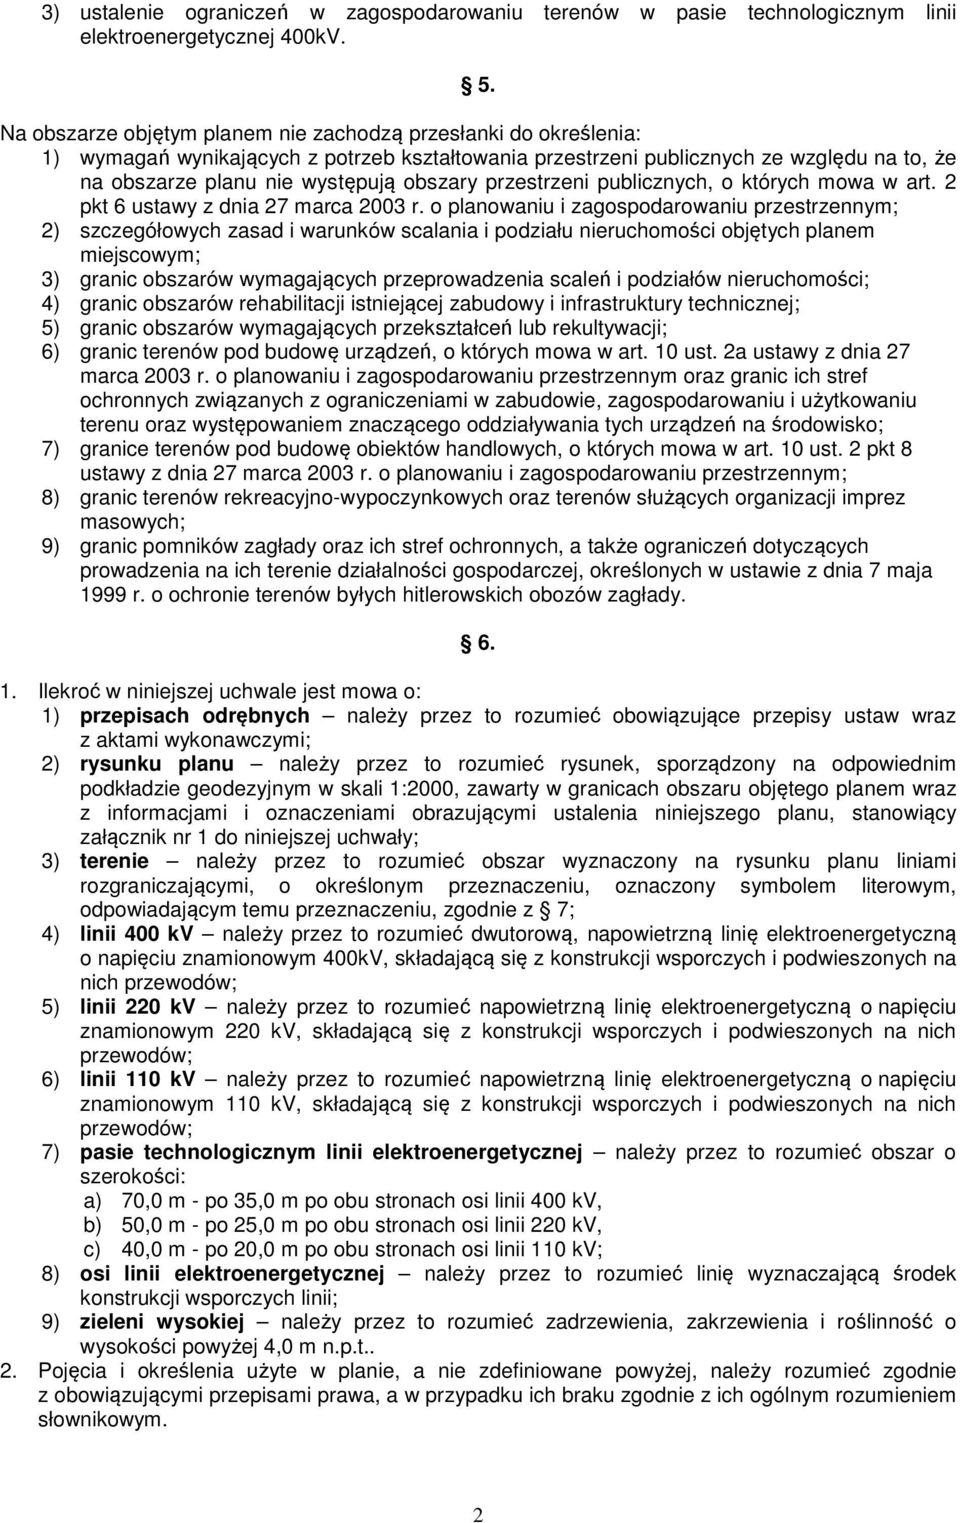 przestrzeni publicznych, o których mowa w art. 2 pkt 6 ustawy z dnia 27 marca 2003 r.